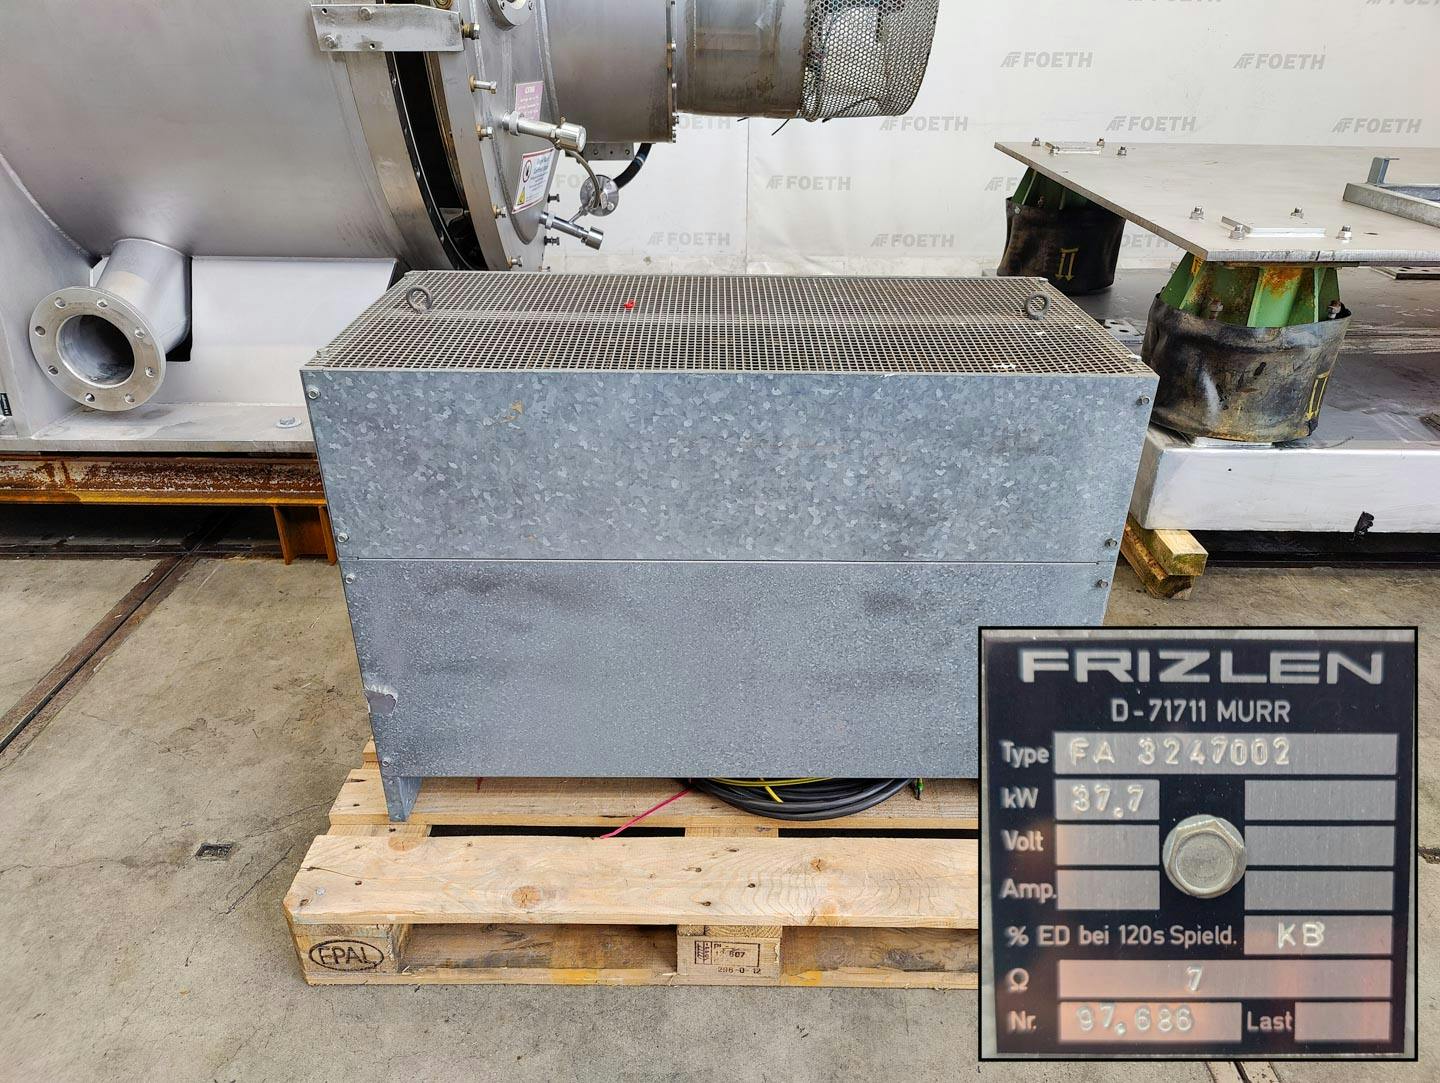 Fima Process Trockner TZT-1300 - centrifuge dryer - Basket centrifuge - image 10